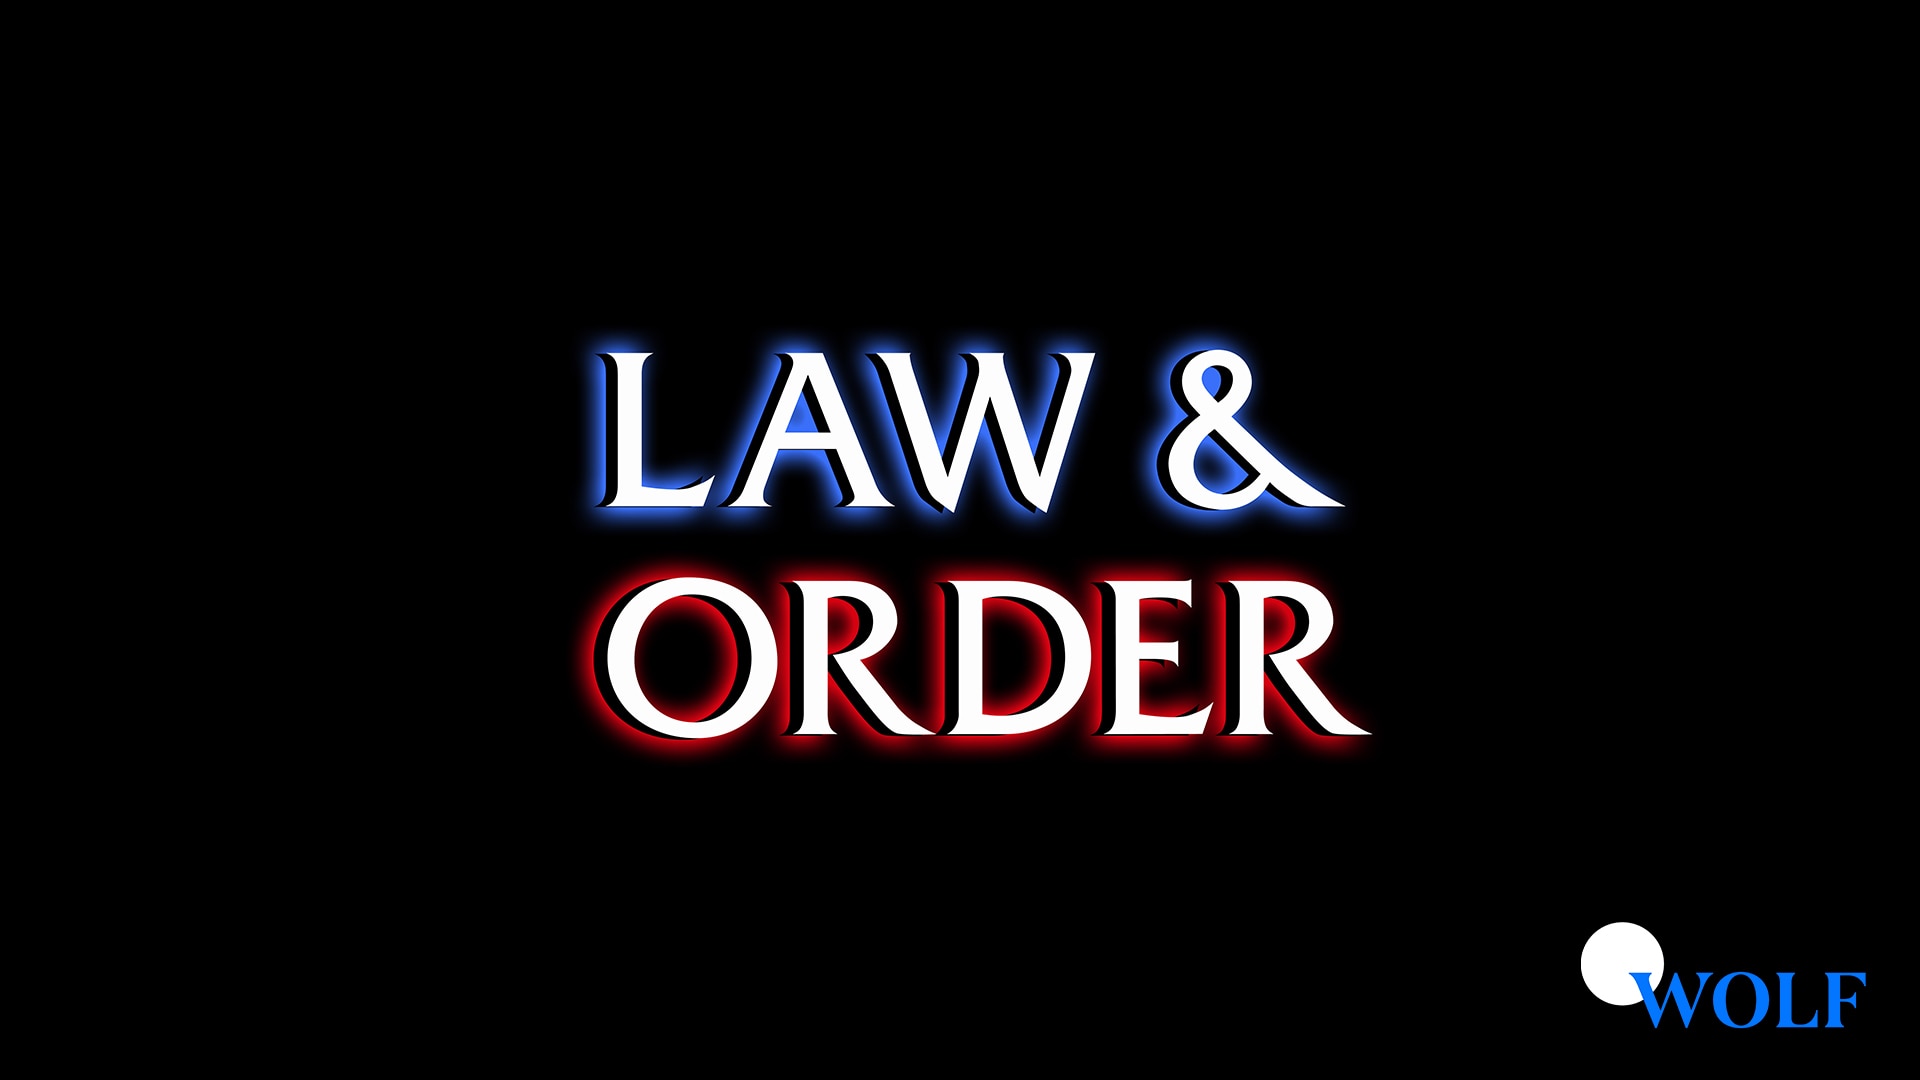 Order tv. Law & order background.